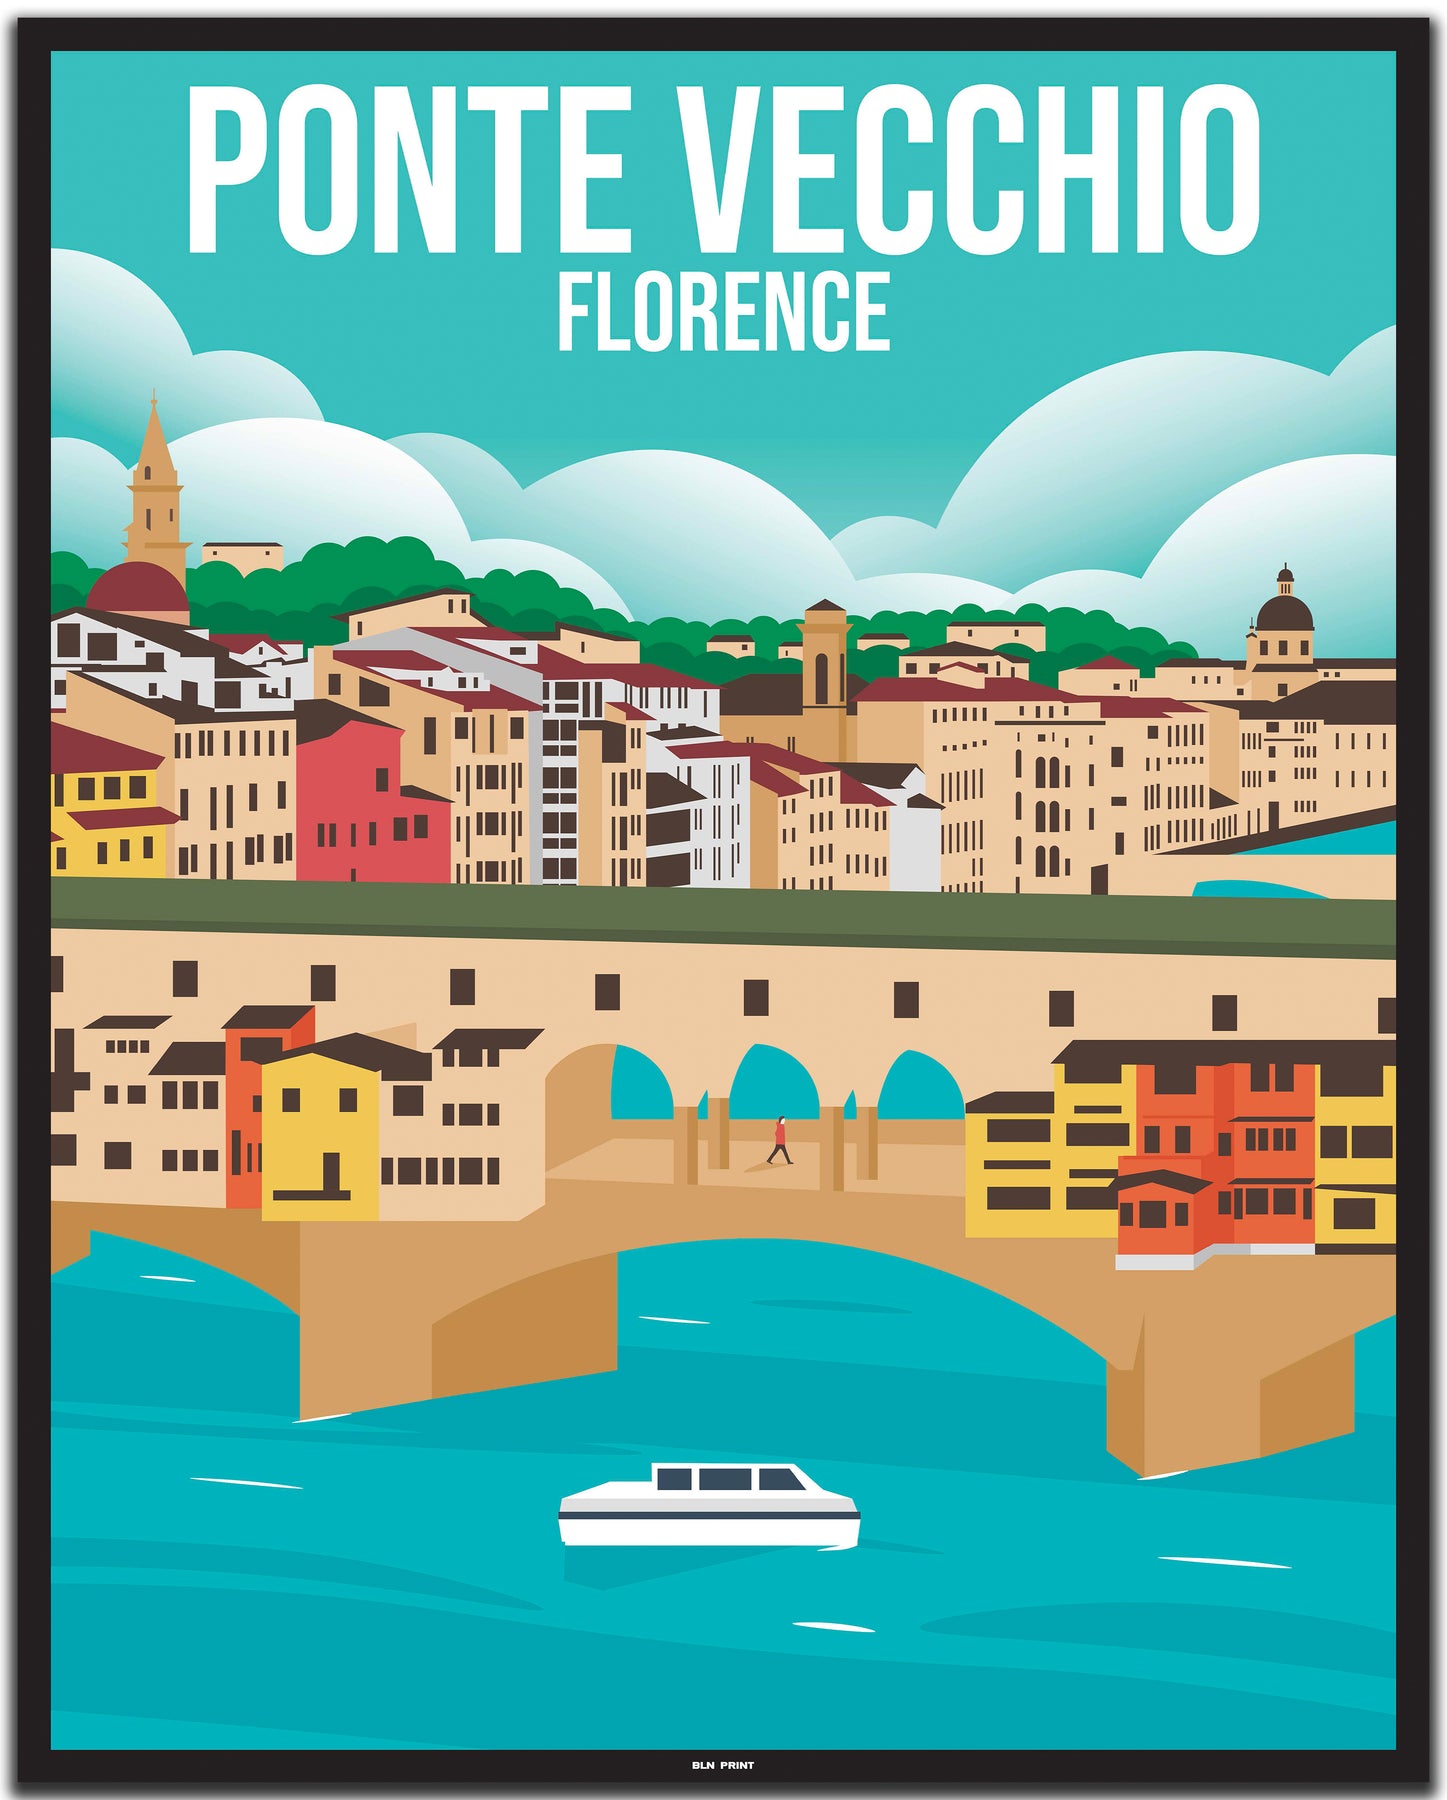 forfængelighed hvordan man bruger berømt Ponte Vecchio Florence (1) - Vintage Travel Poster – BLN PRINT